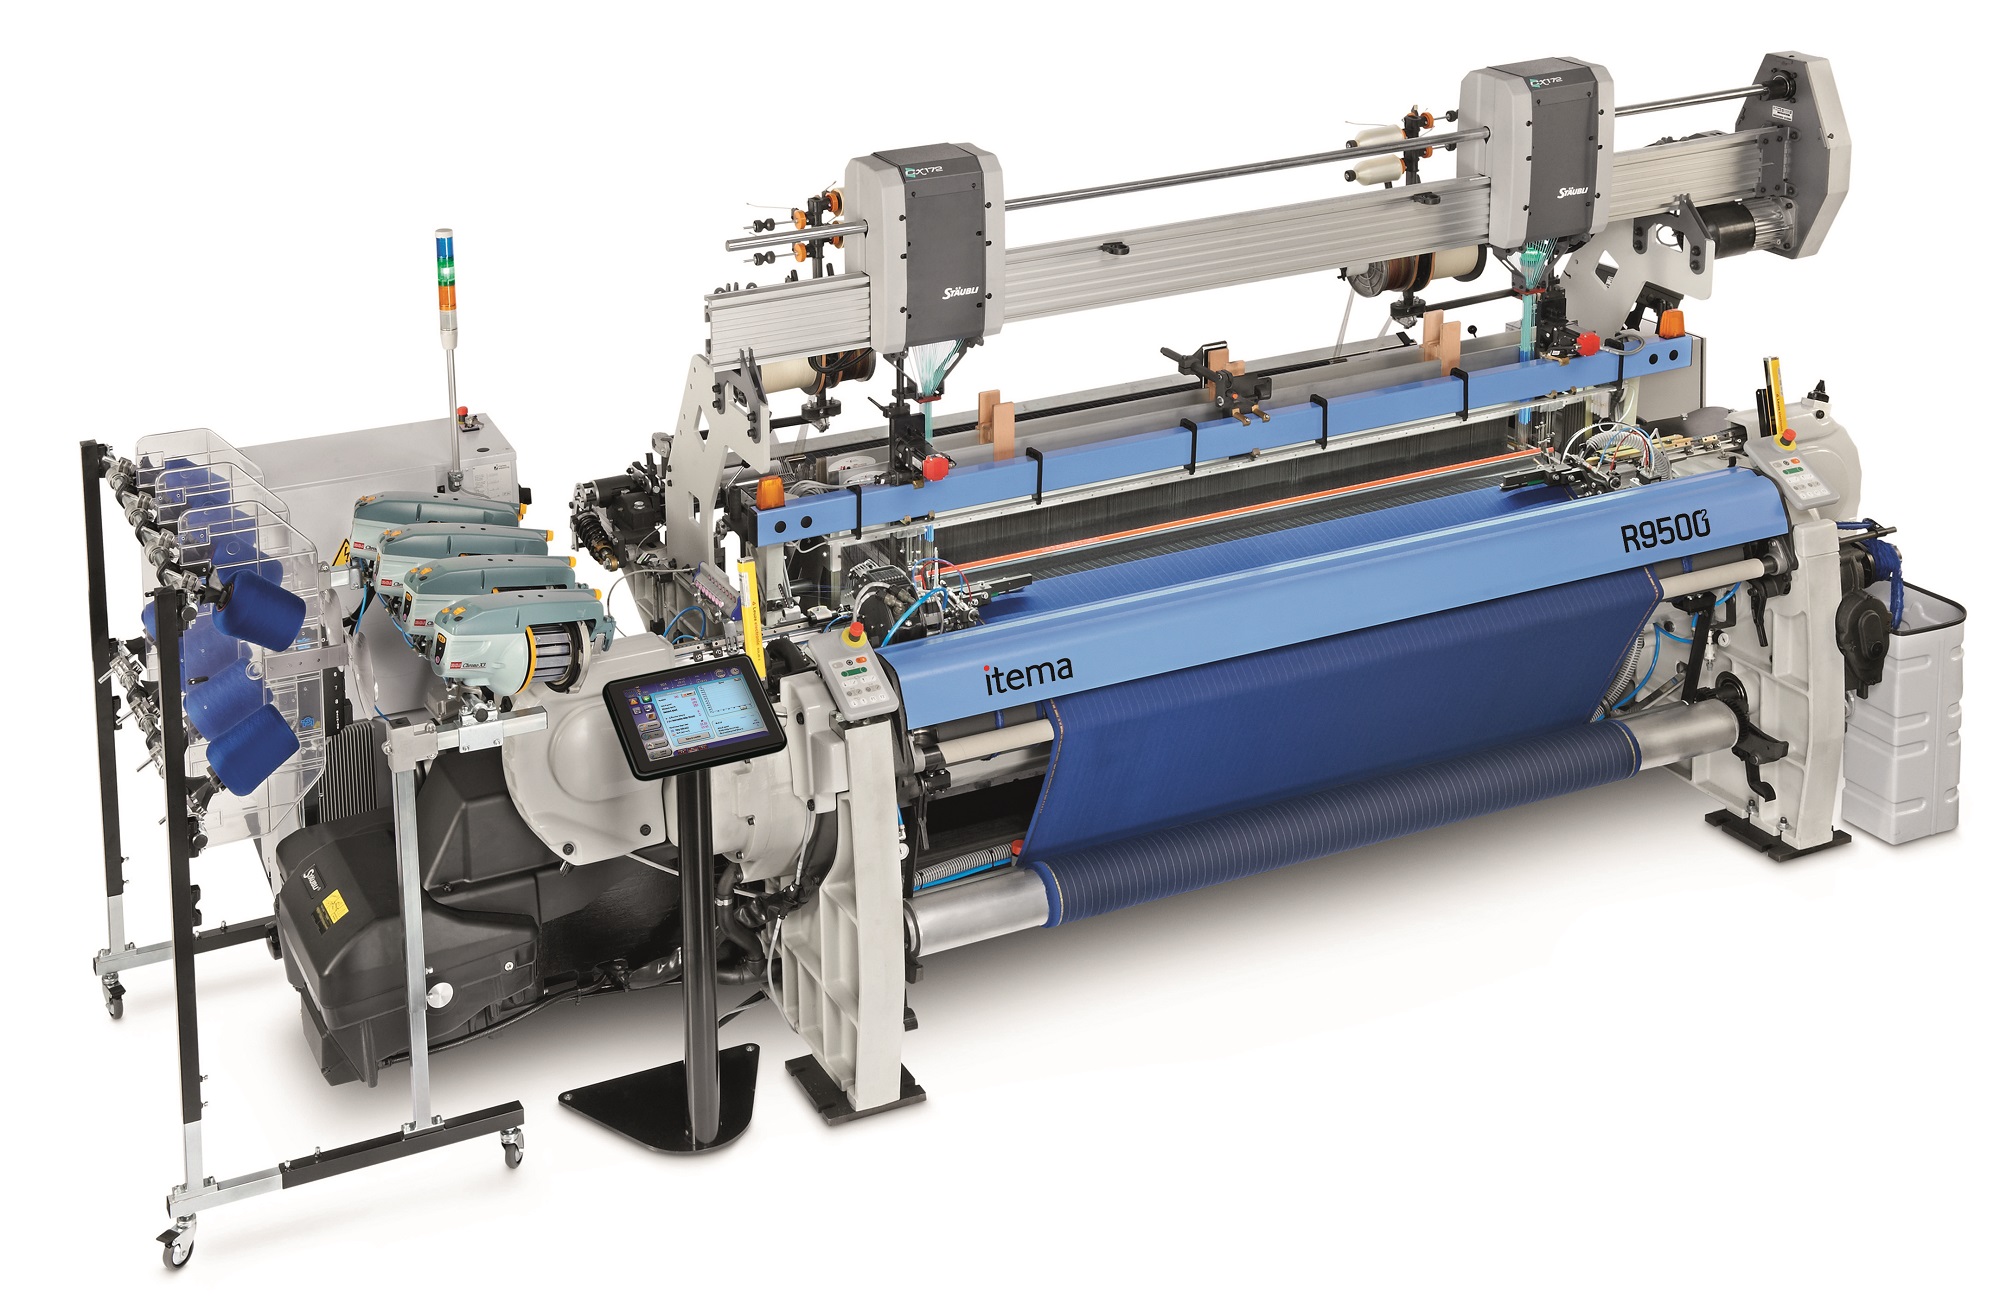 Lanificio Cerruti to install Itema weaving machines at Biella plant